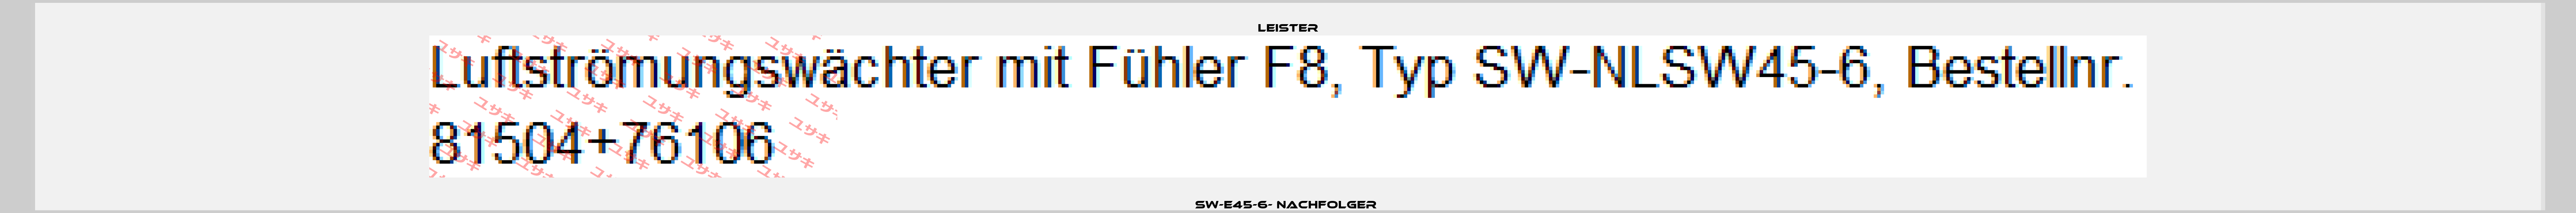 SW-E45-6- nachfolger  Leister